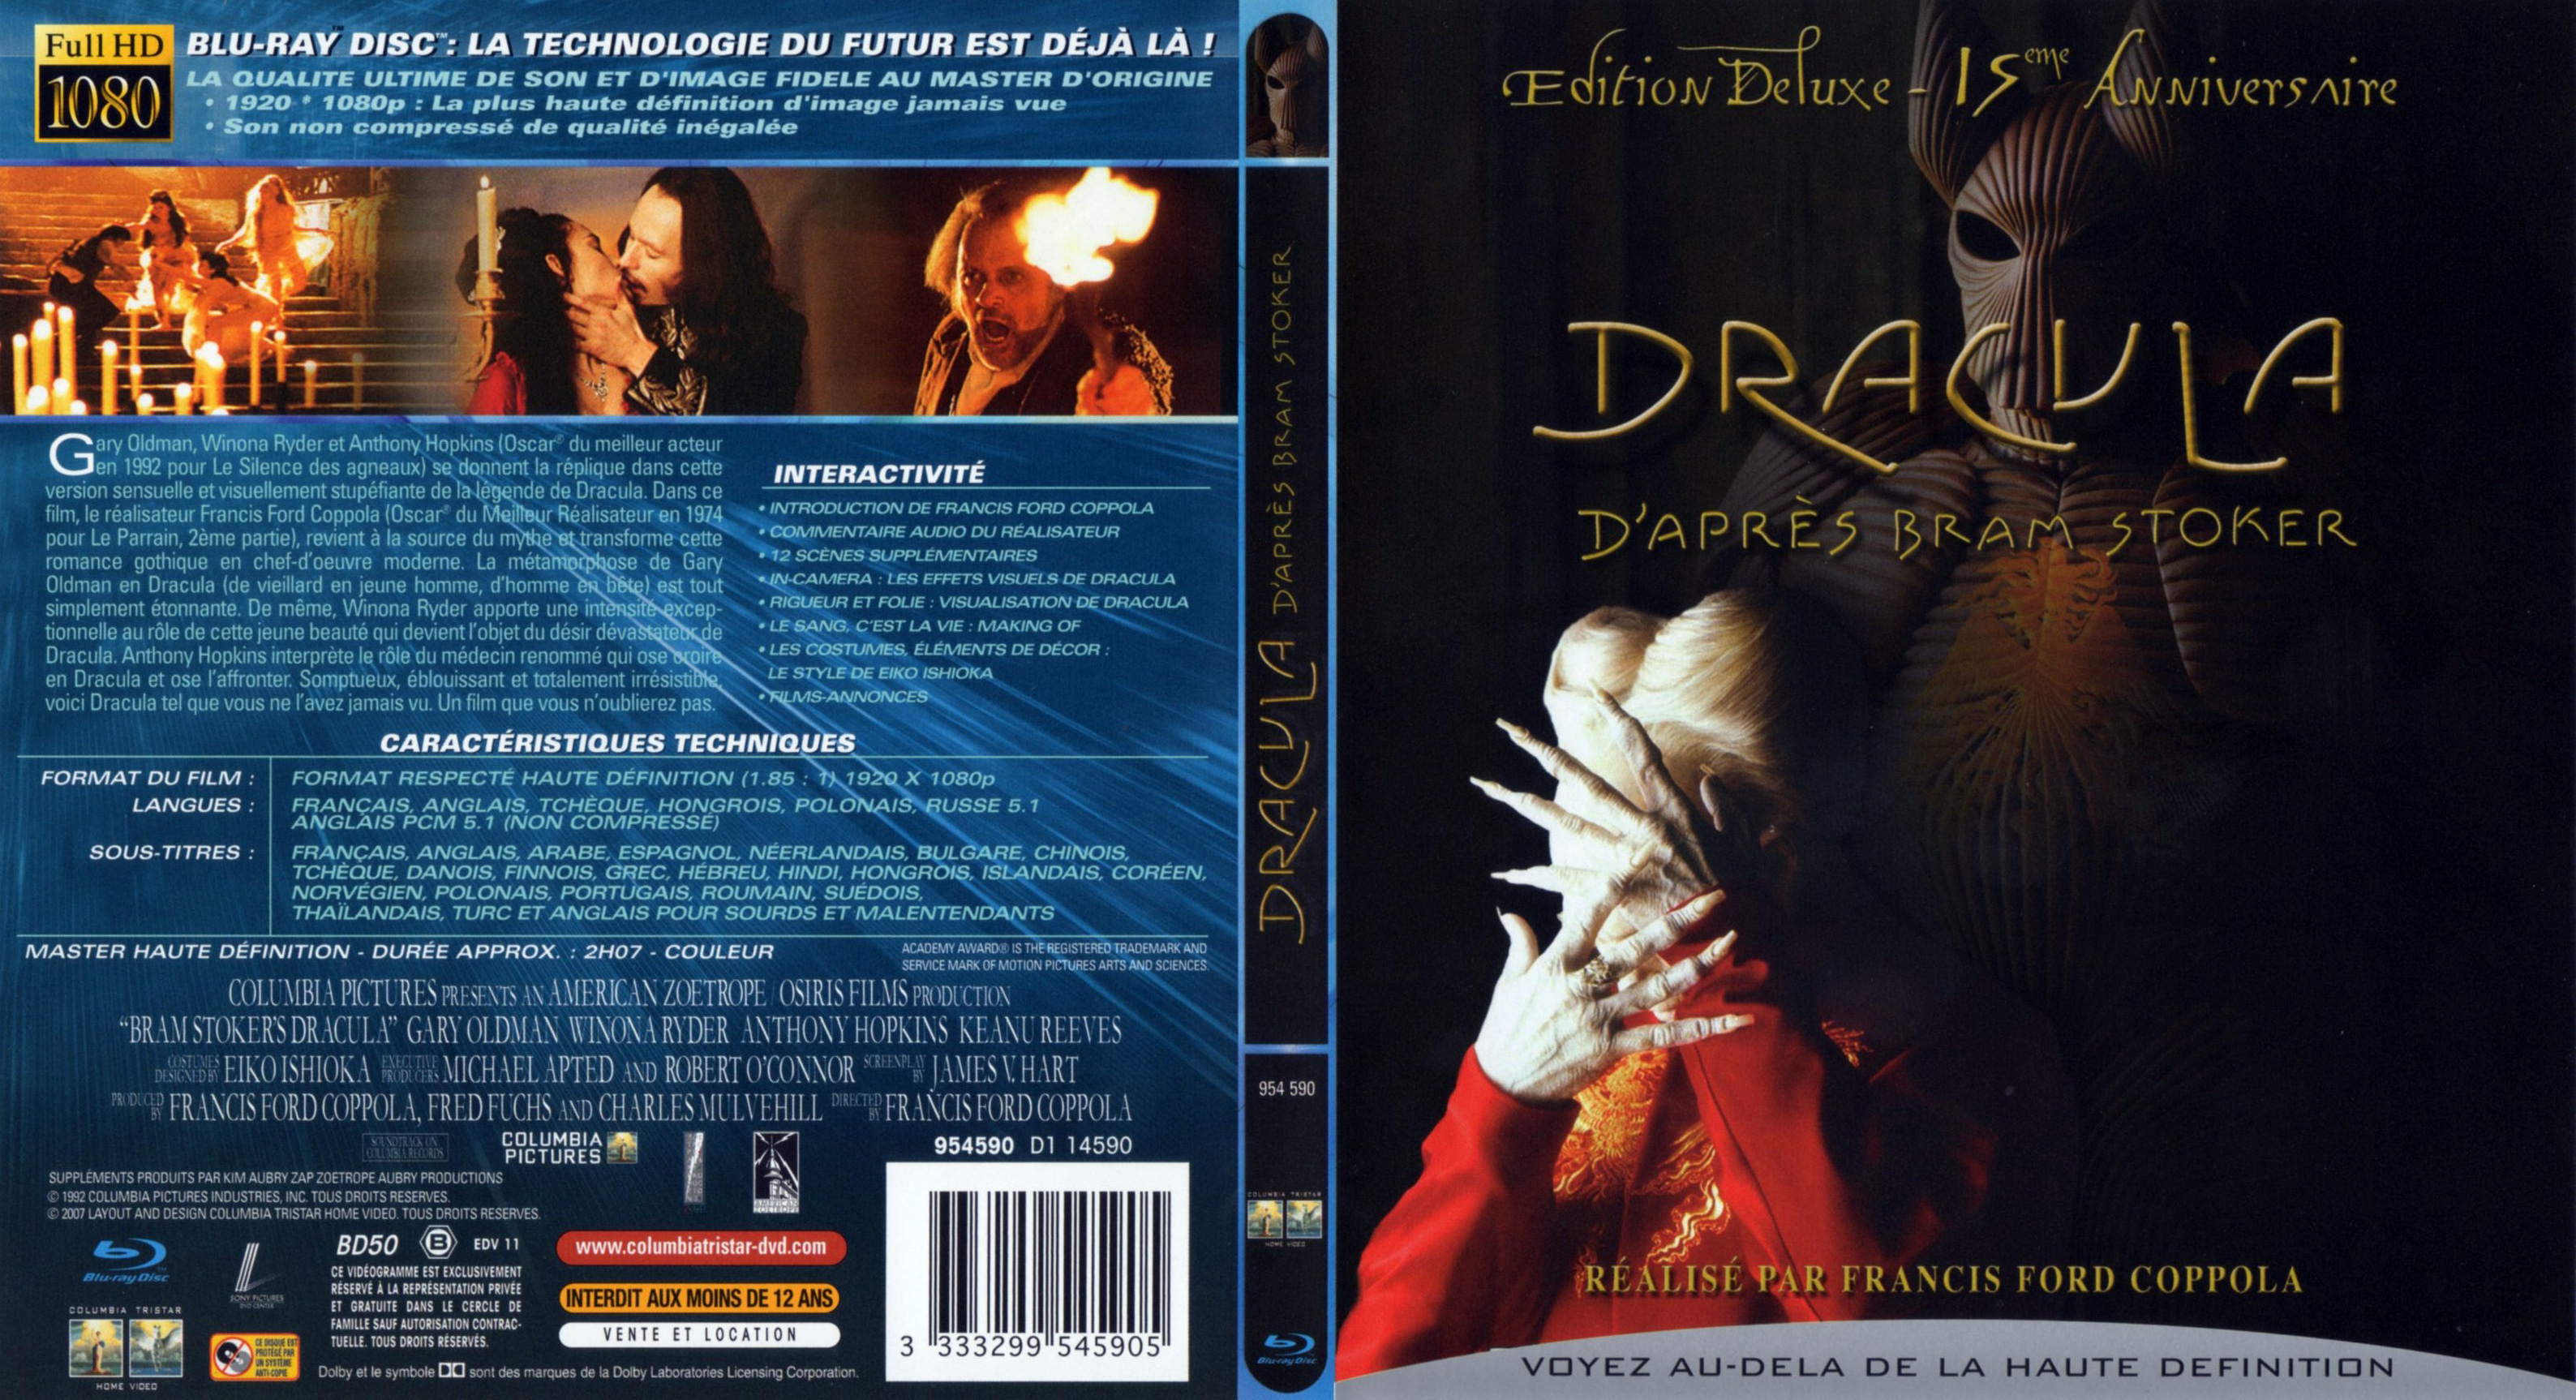 Jaquette DVD Dracula (BLU-RAY) v2